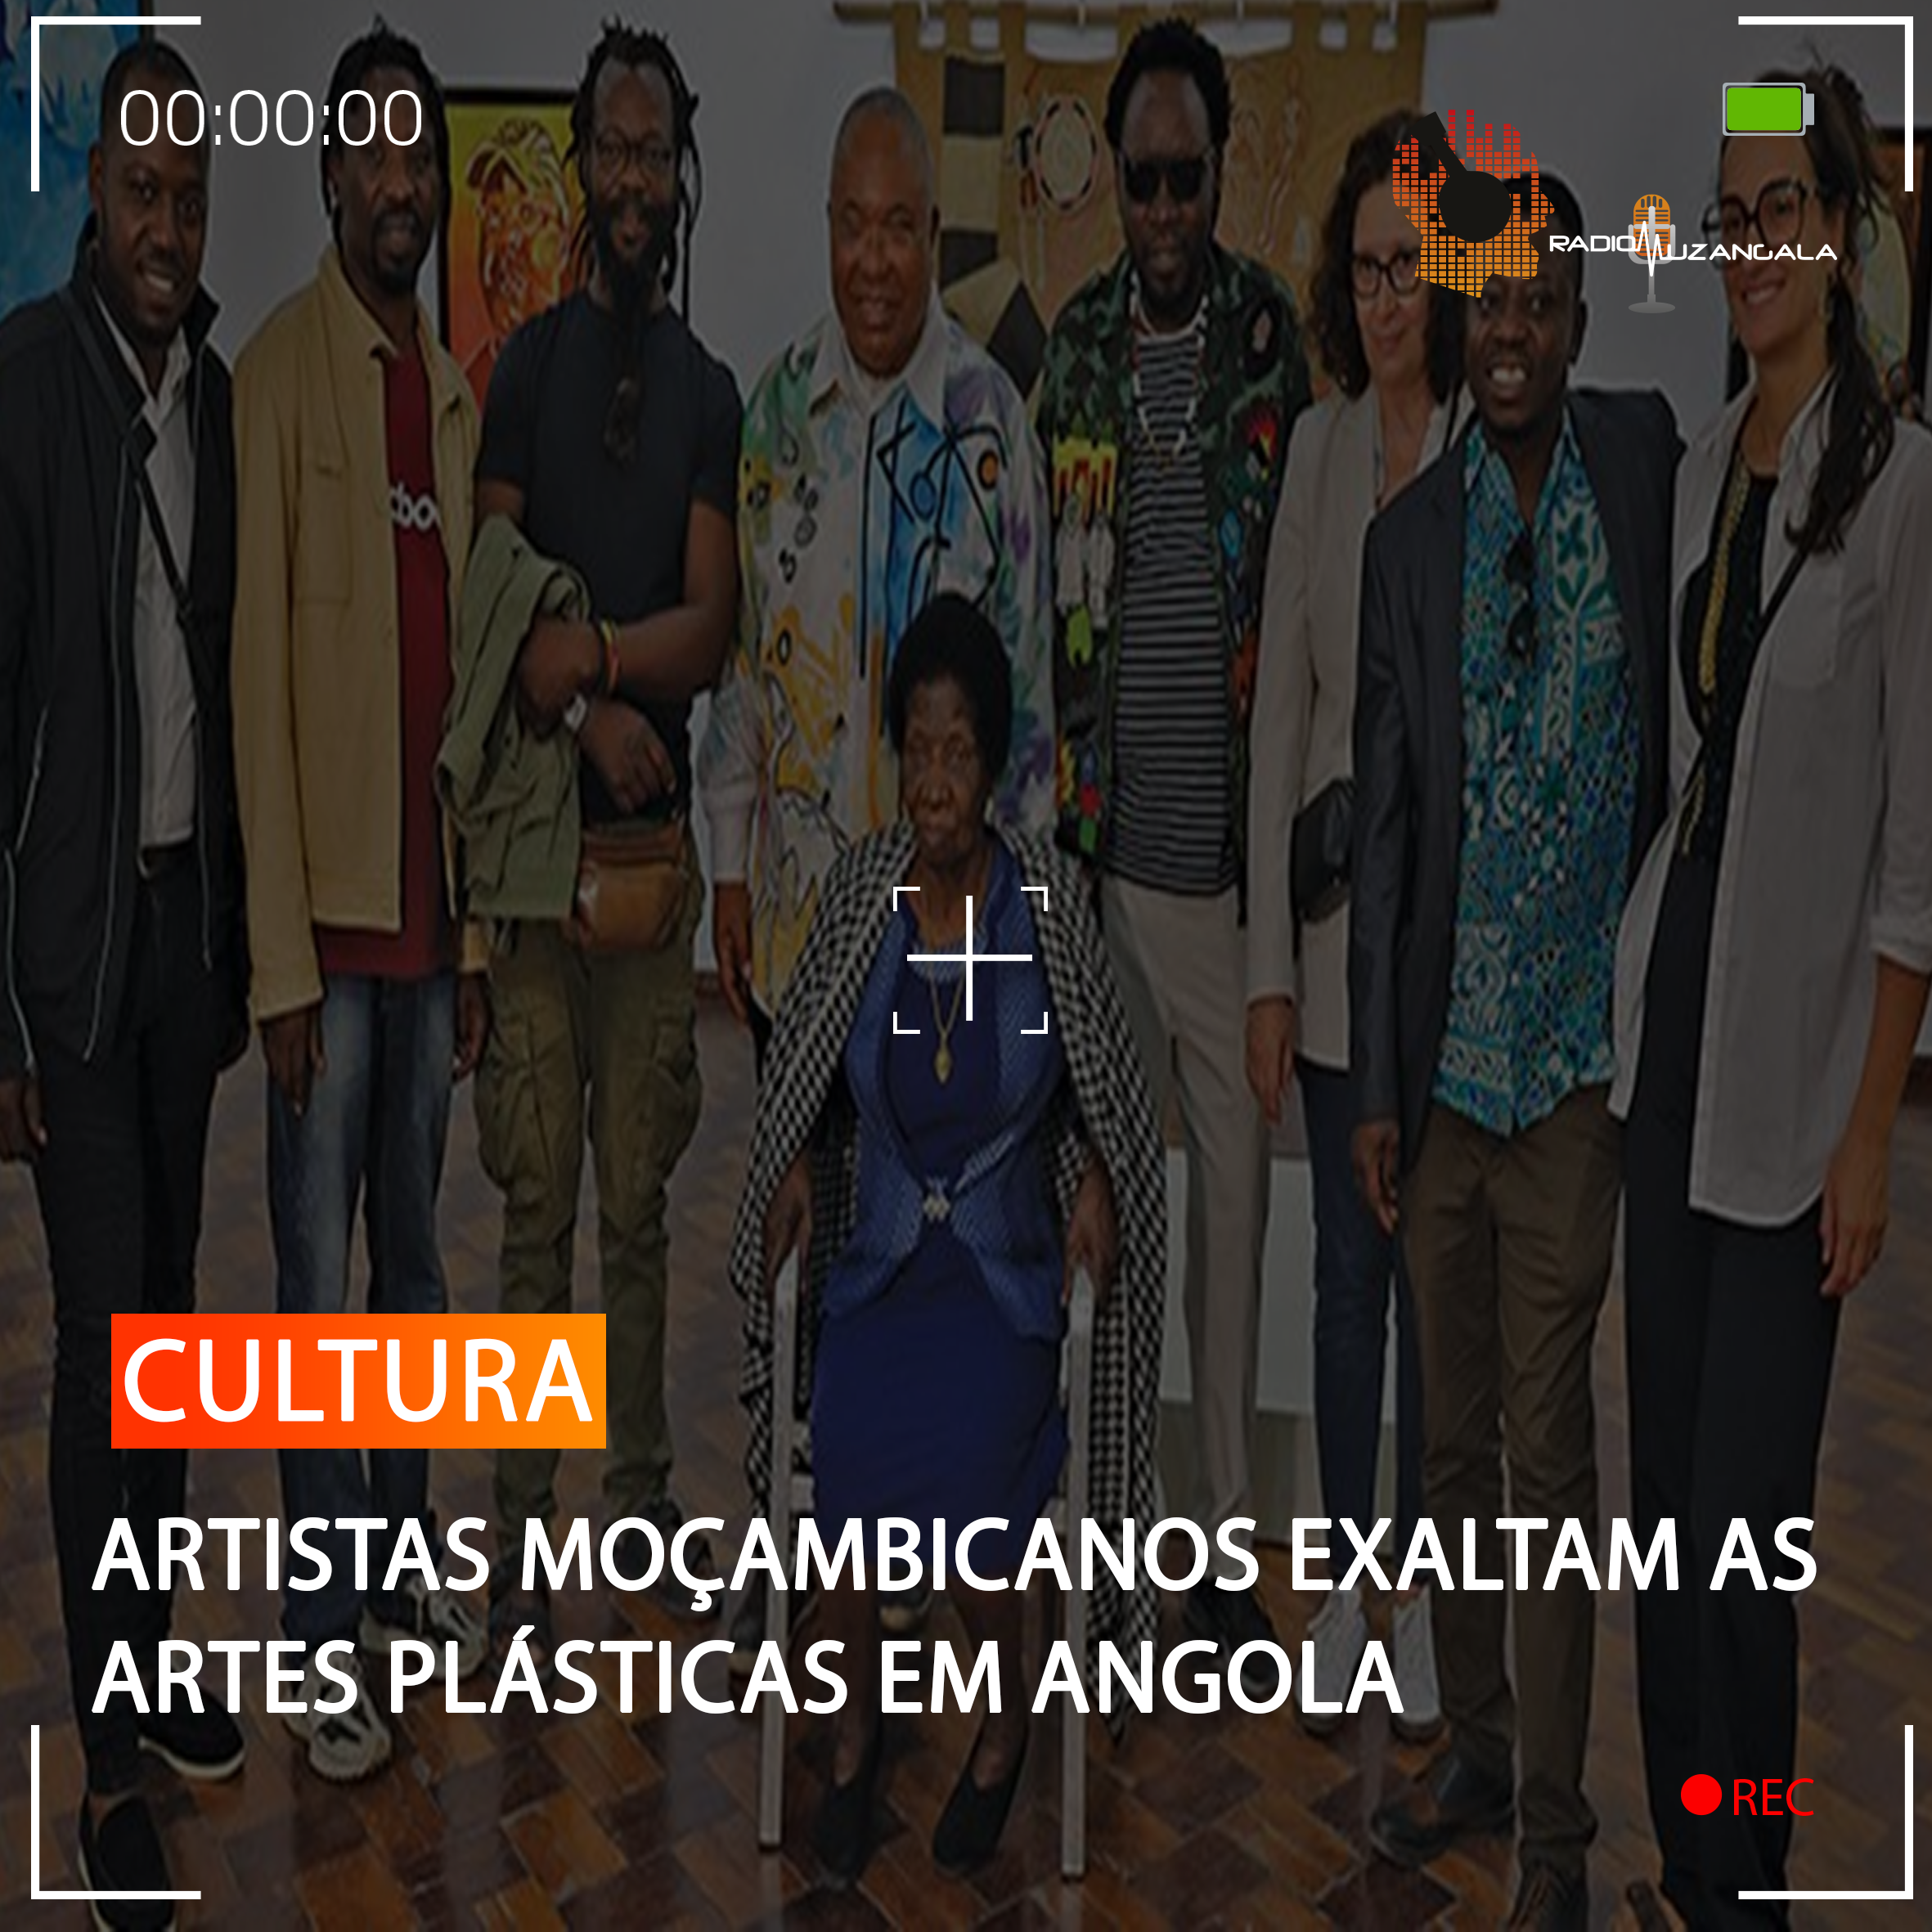  ARTISTAS MOÇAMBICANOS EXALTAM AS ARTES PLÁSTICAS EM ANGOLA